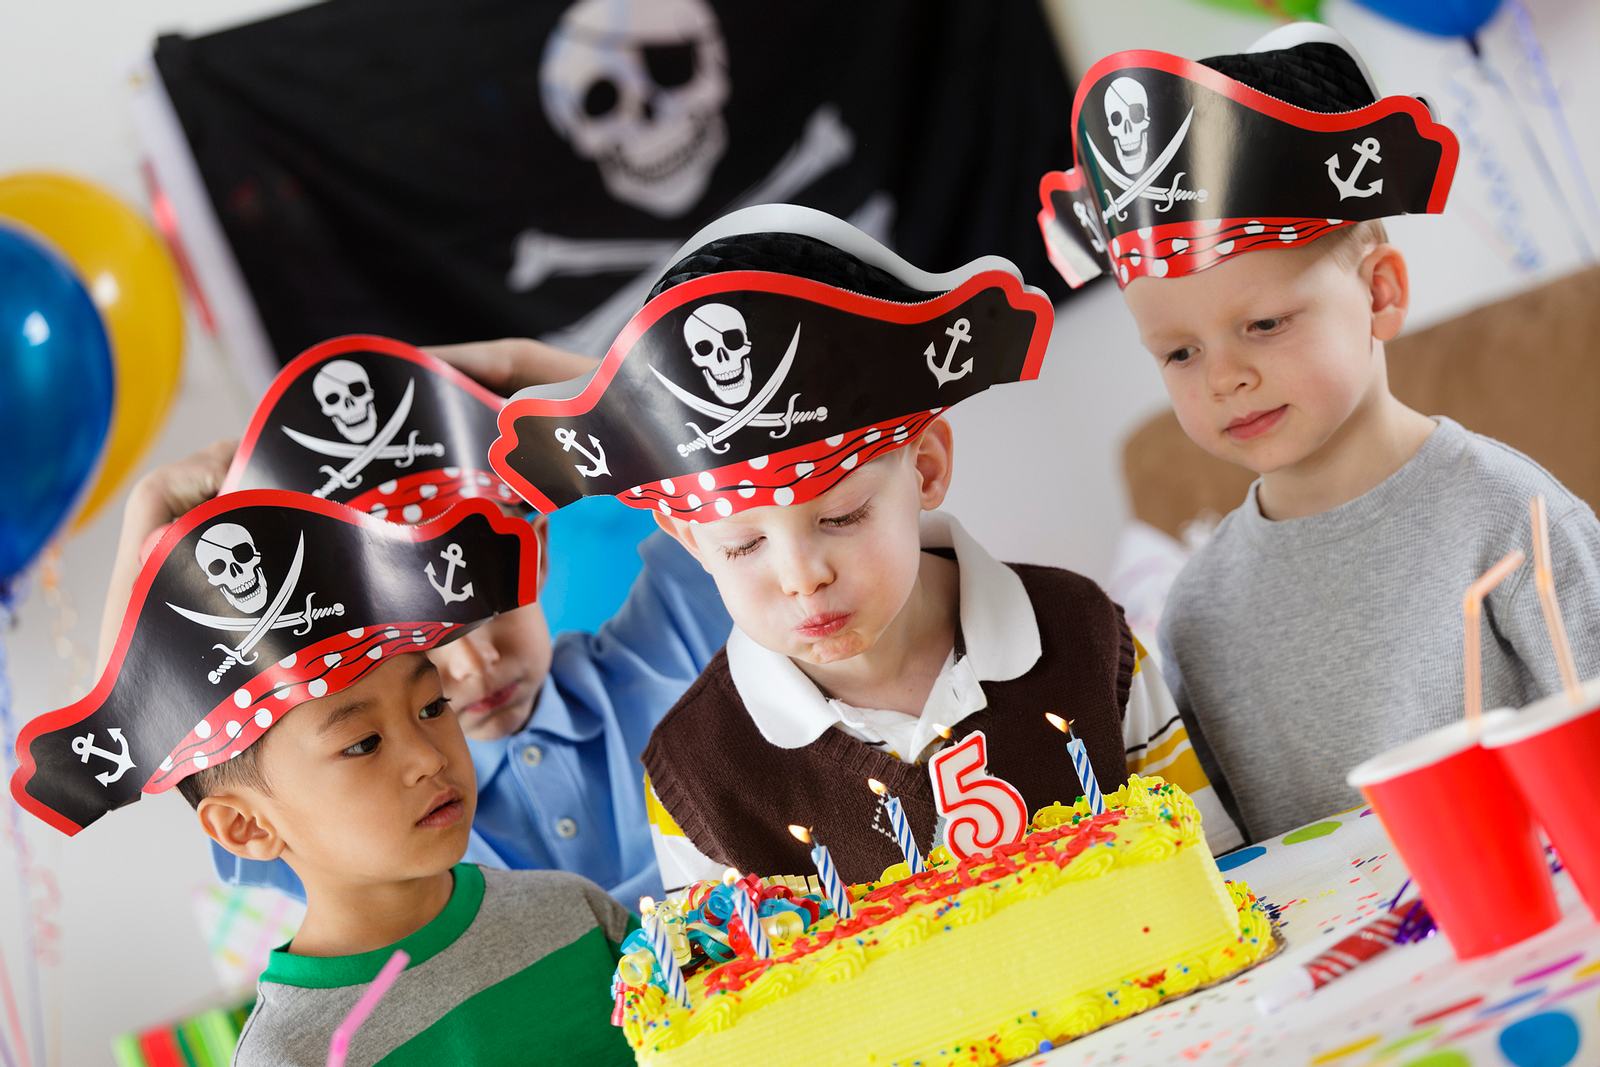 Piraten Kindergeburtstags Party Dekoration Geschirr Teller Becher große Auswahl 